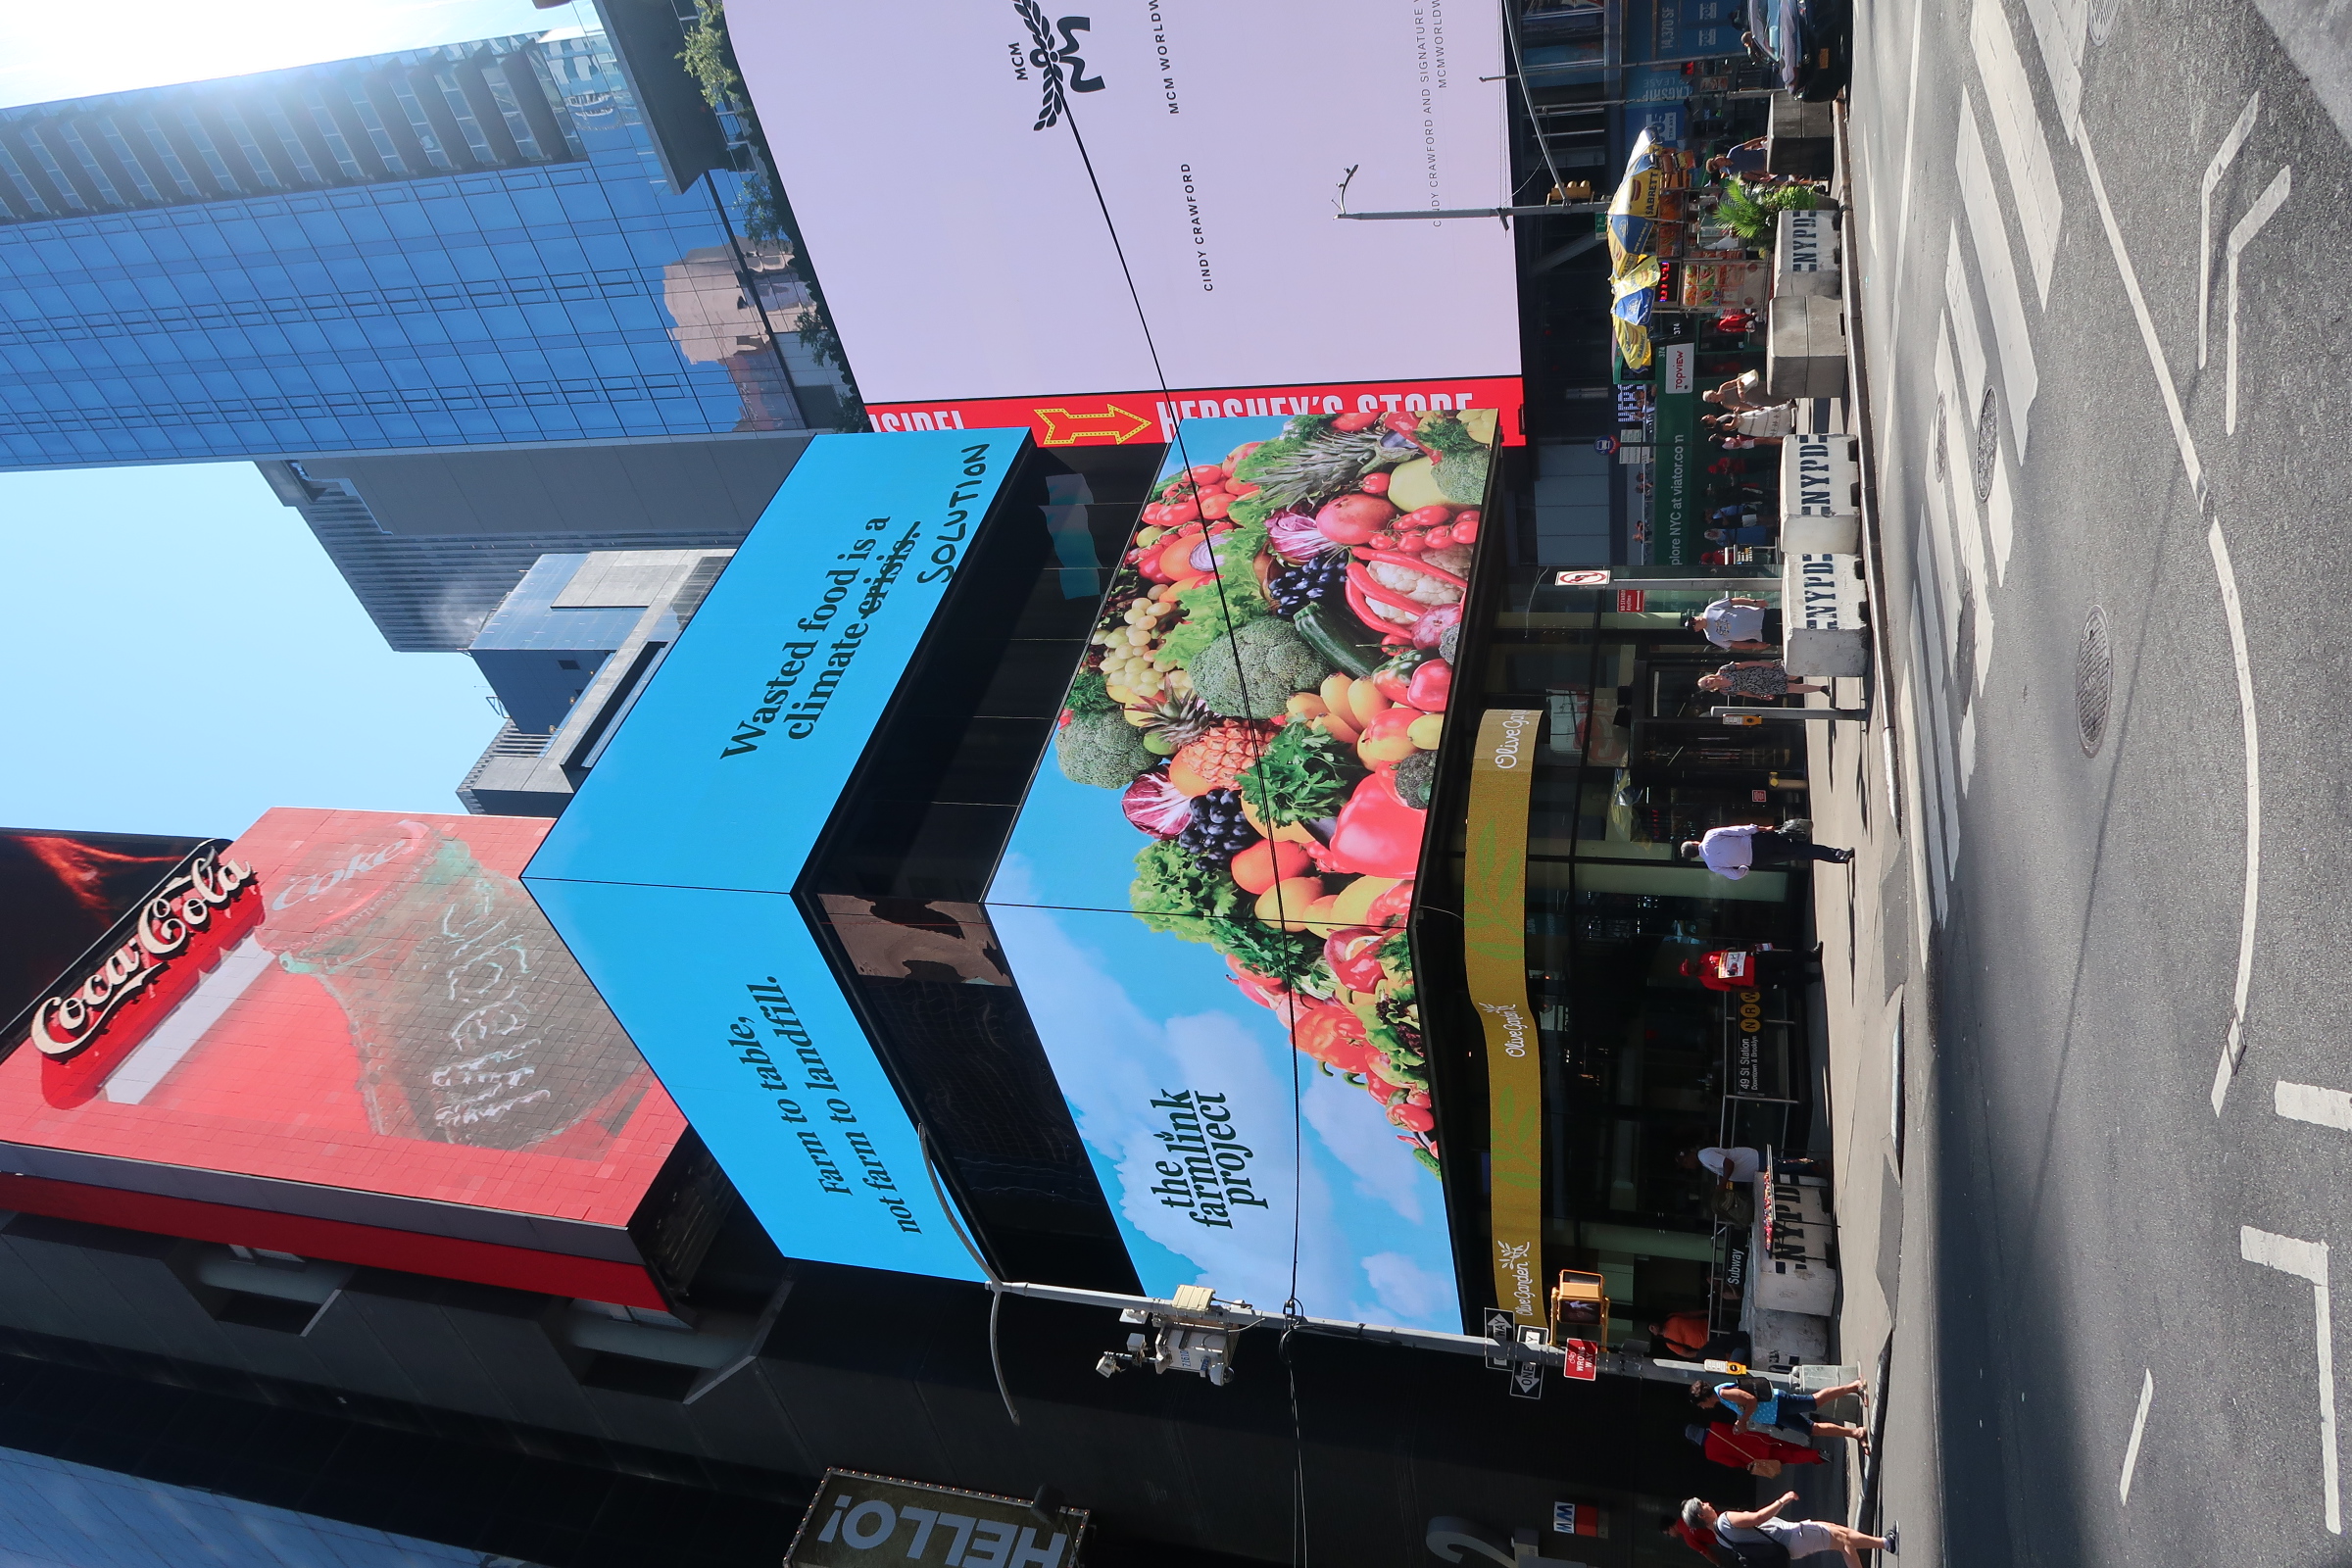 Tijdens de New York City Climate Week plaatste The Farmlink Project een gigantisch billboard midden op Times Square.